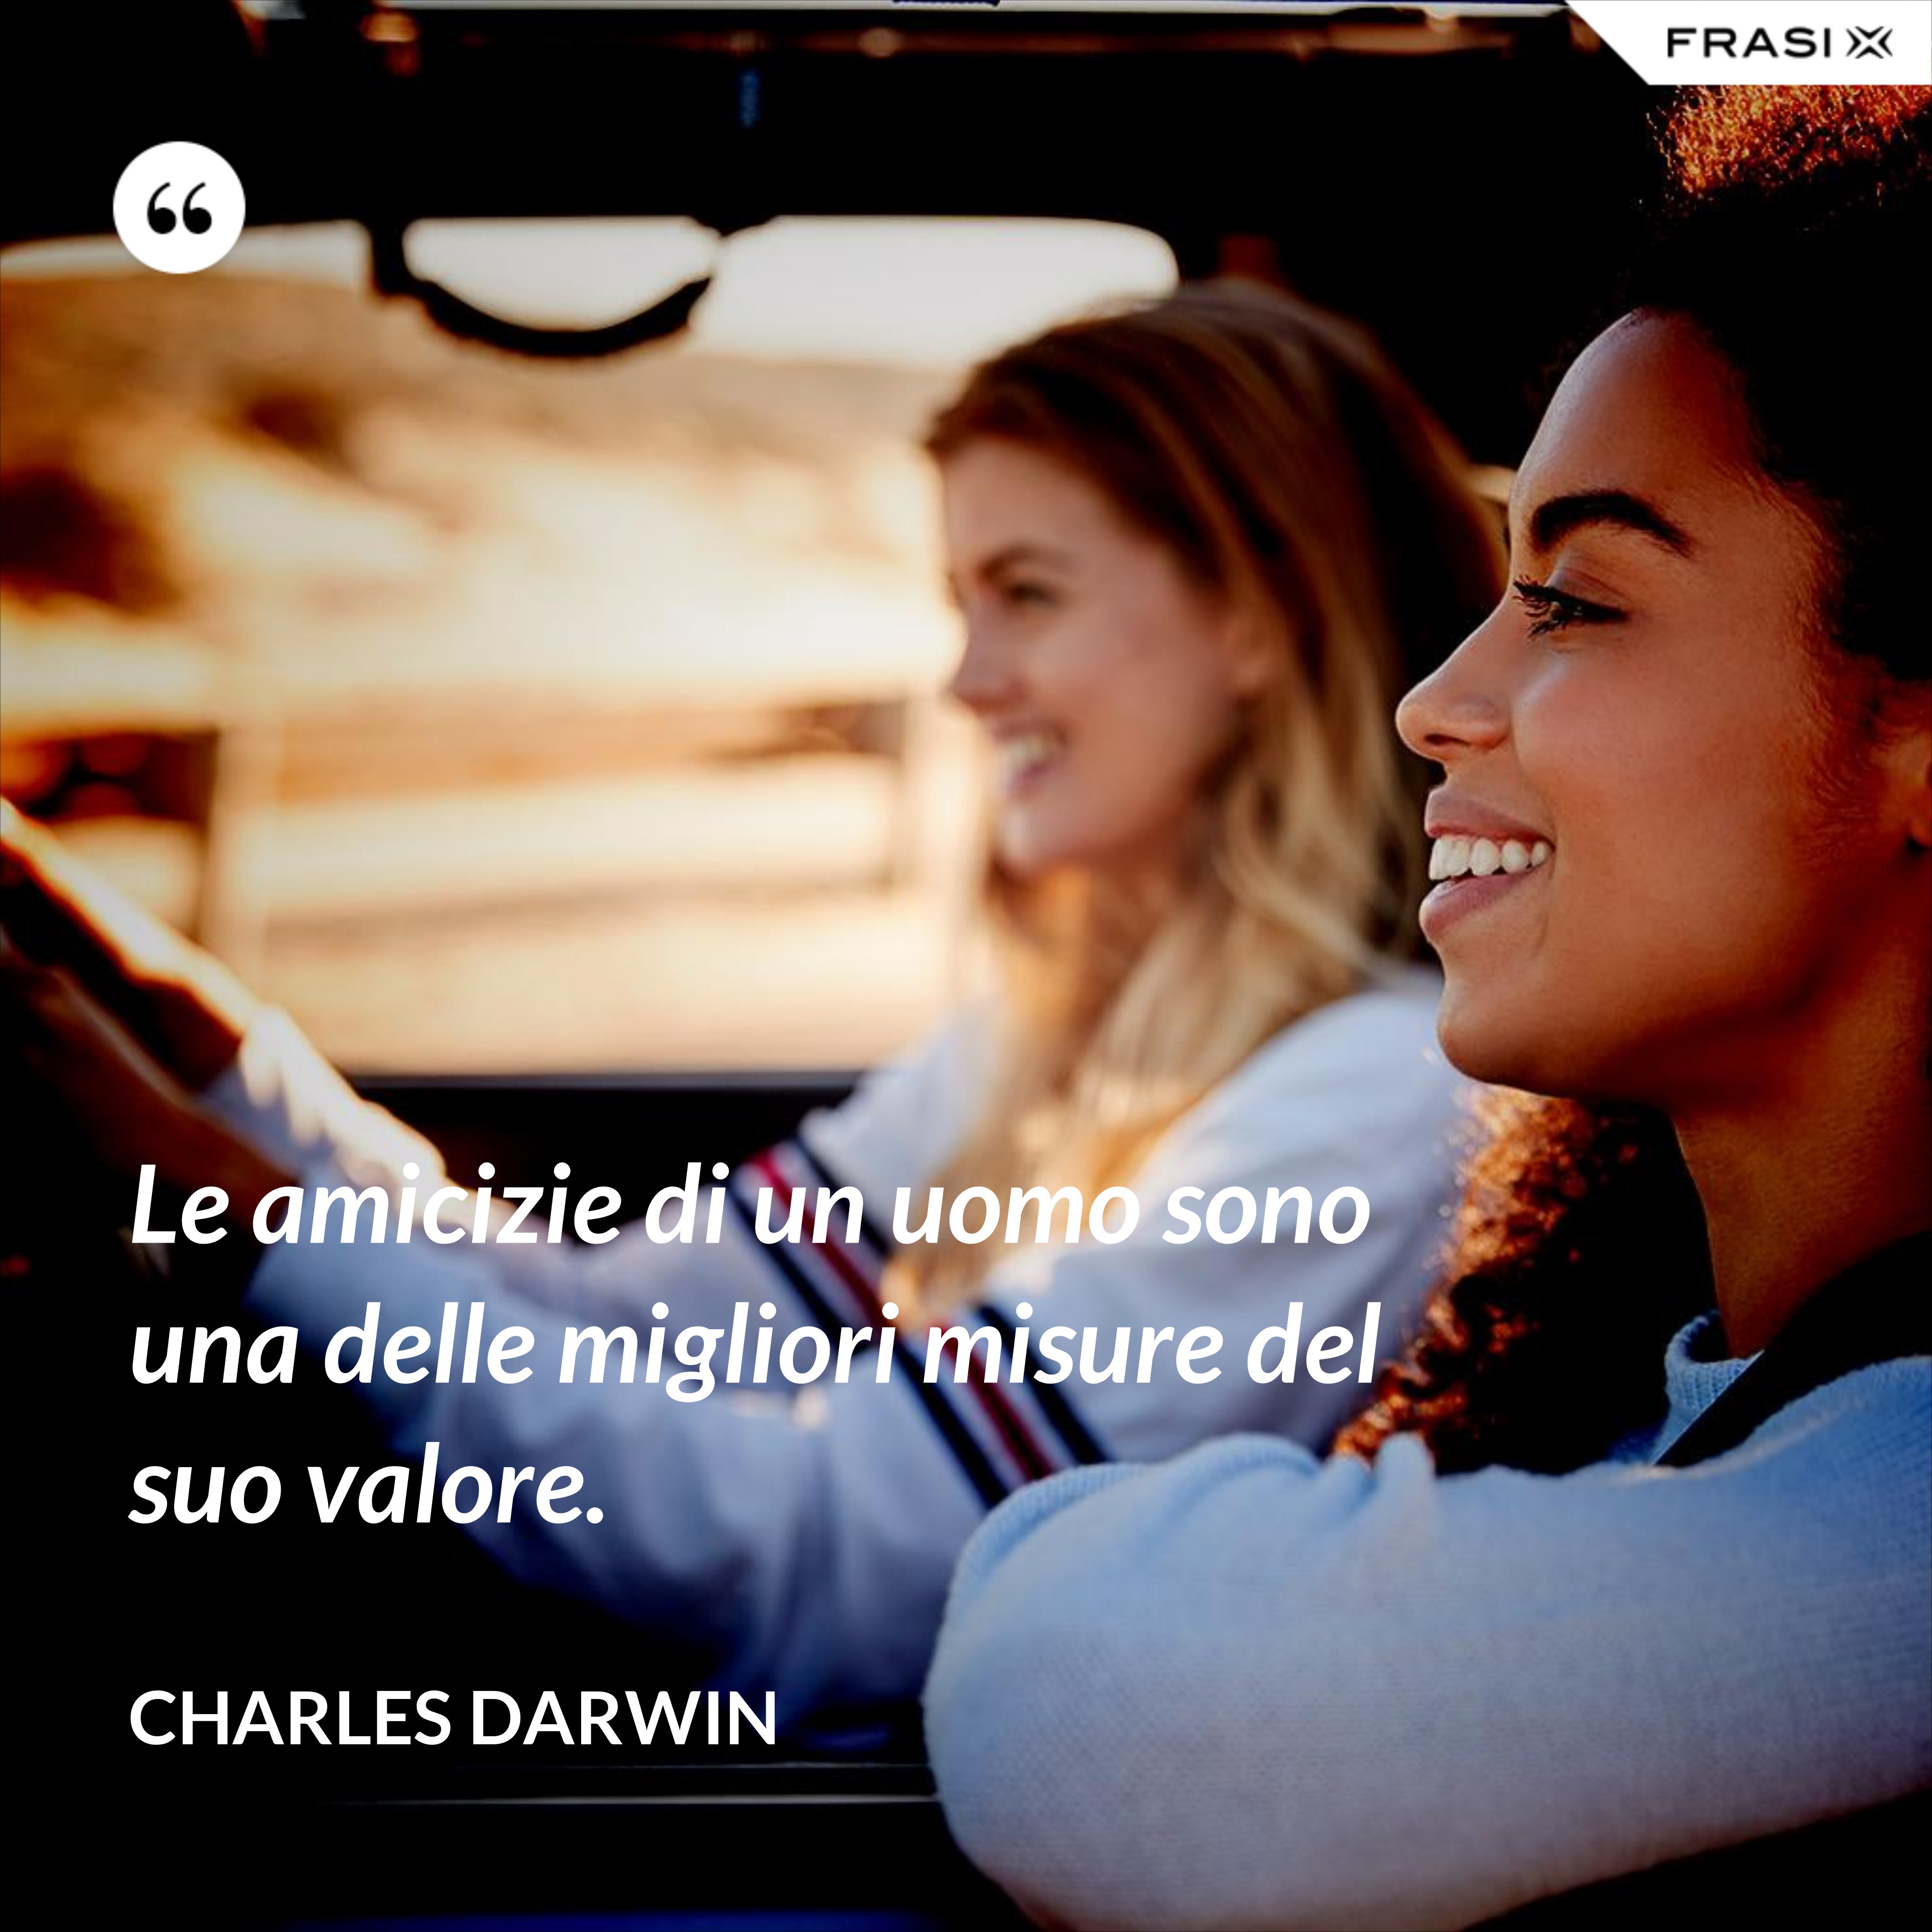 Le amicizie di un uomo sono una delle migliori misure del suo valore. - Charles Darwin